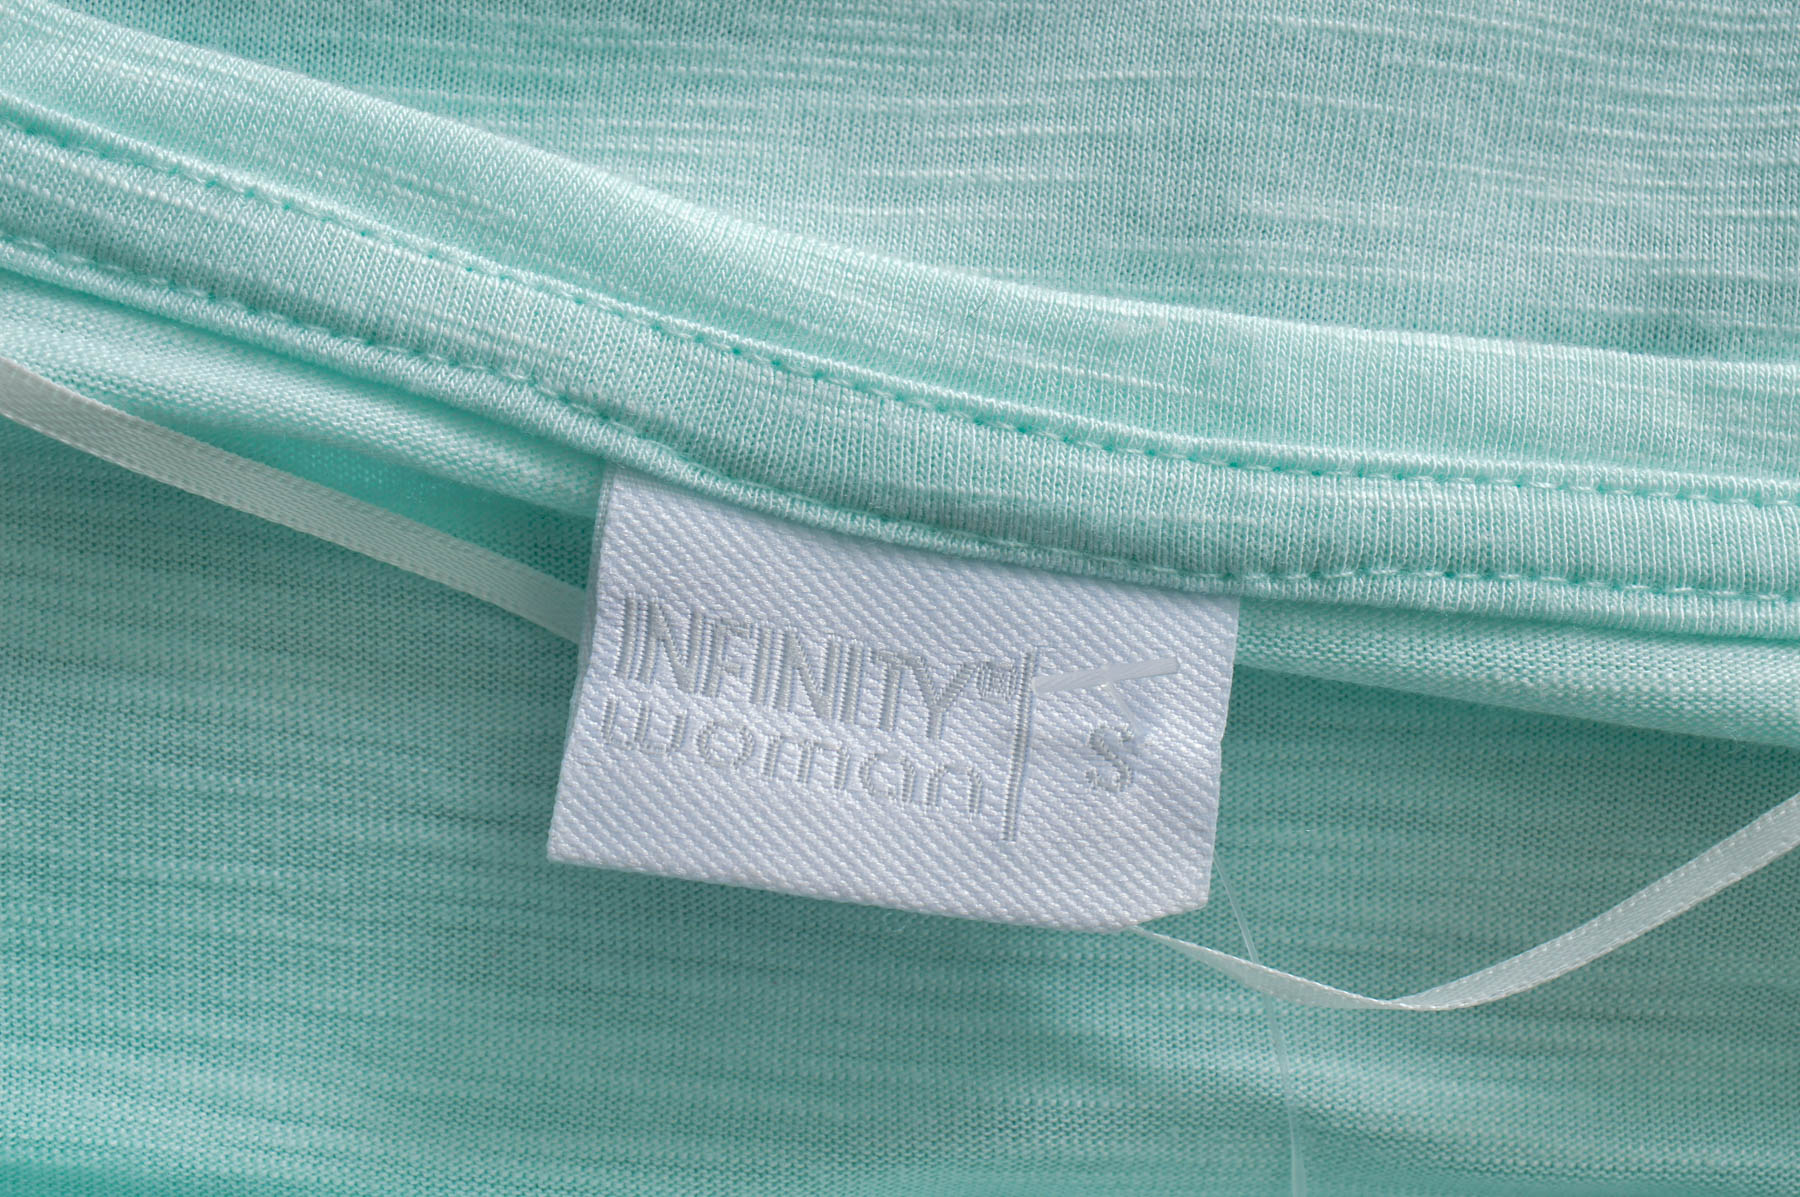 Дамска тениска - Infinity Woman - 2